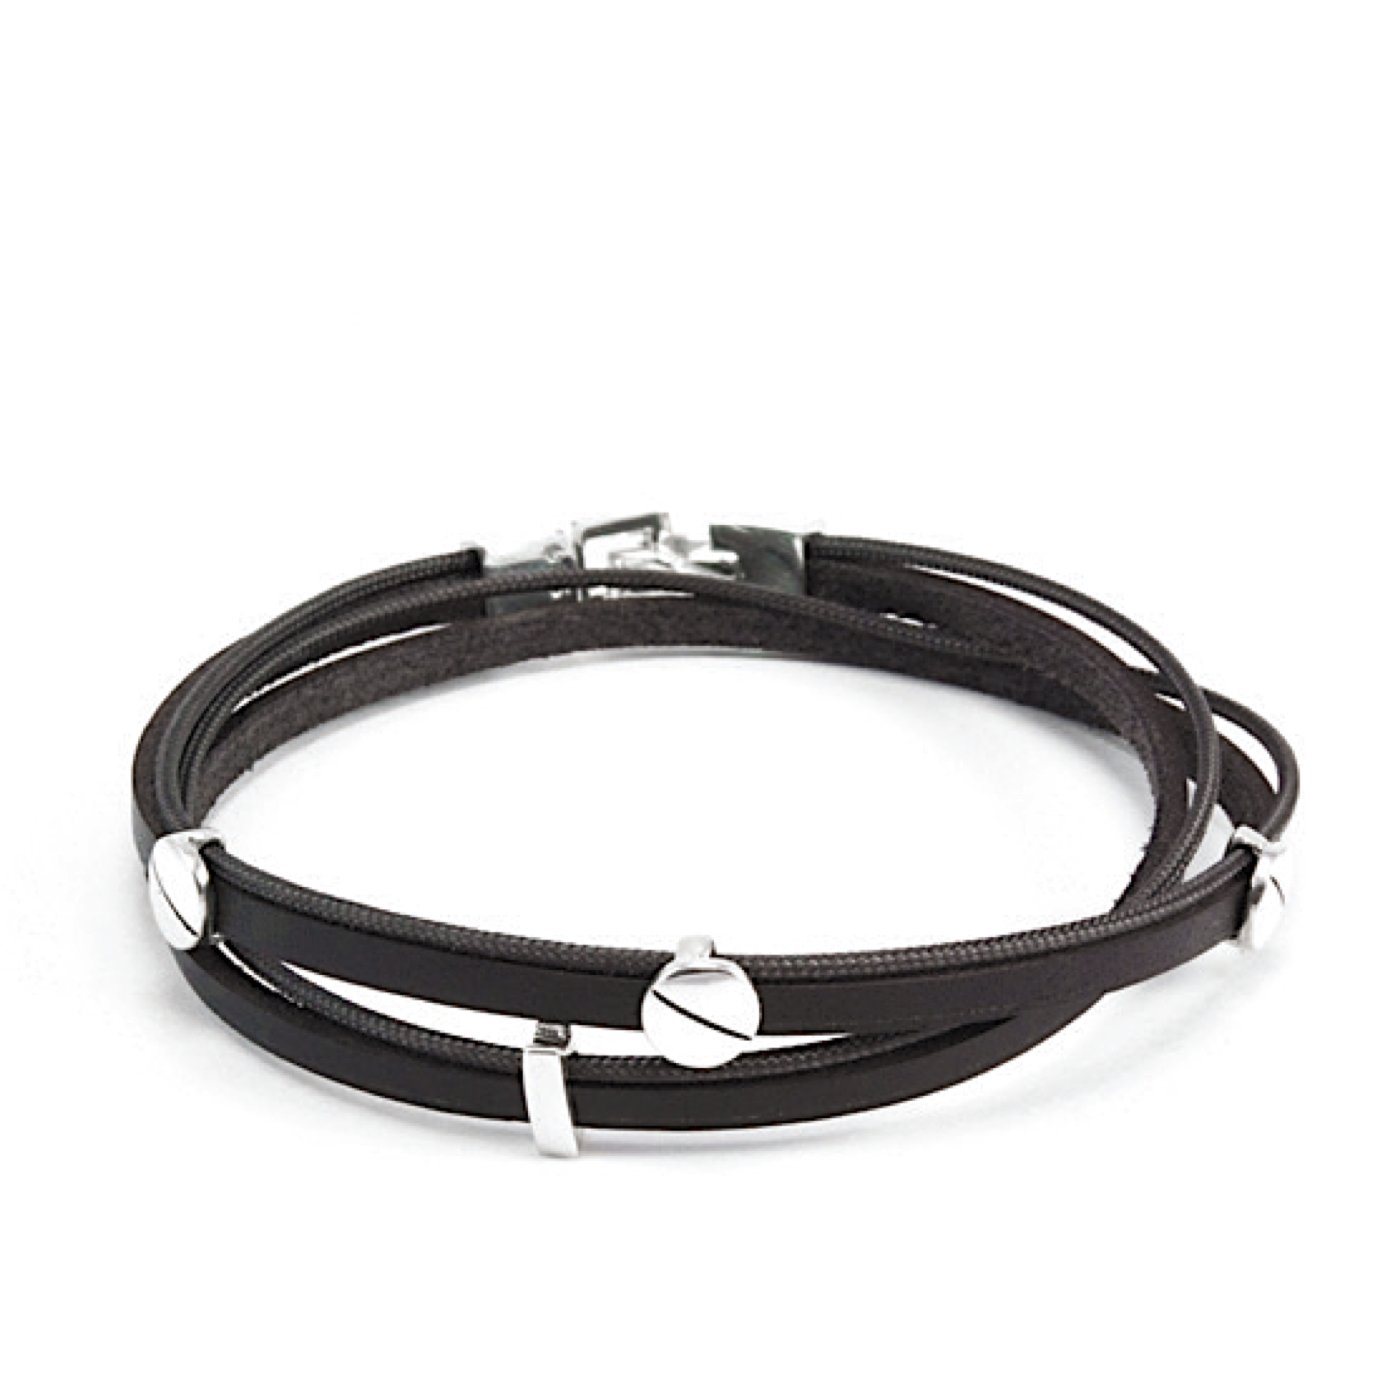 Grunge bracelet set, leather grunge bracelets, boho bracelet set,  collection of black n brown leather and bronze …